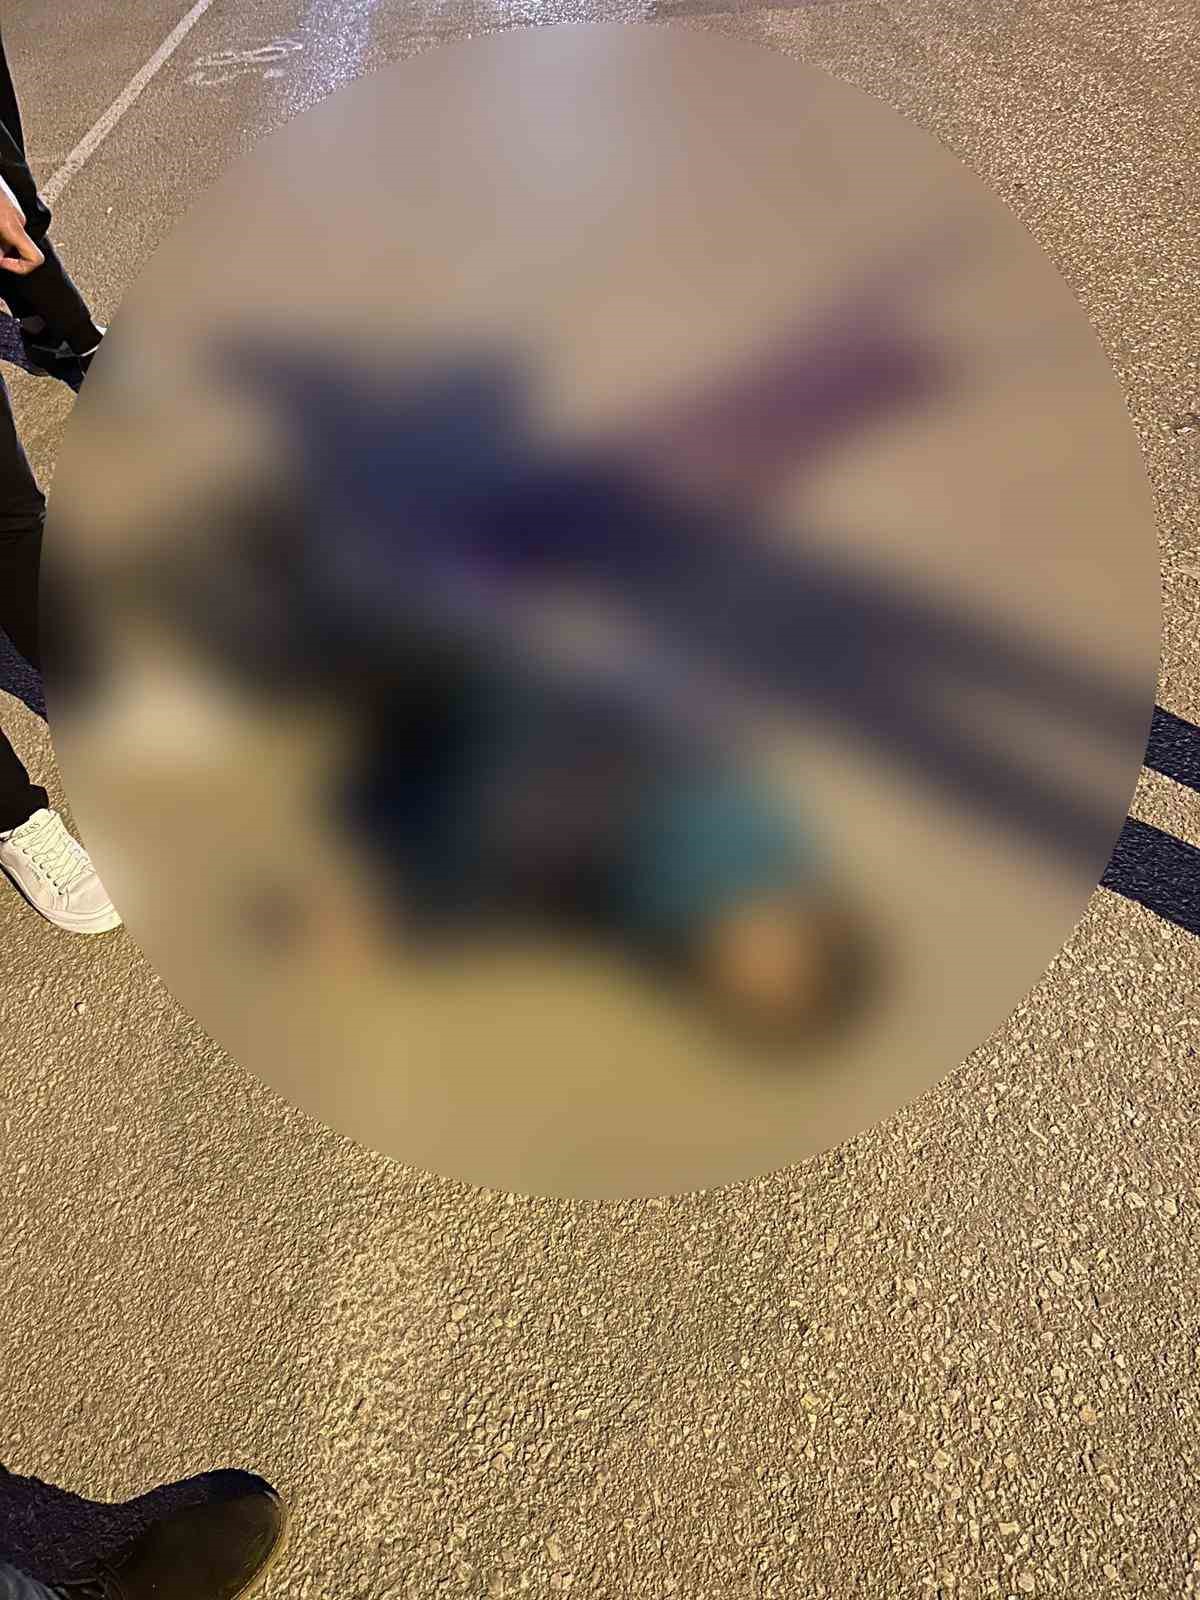 Husumetlisini sokak ortasında öldüren zanlı tutuklandı